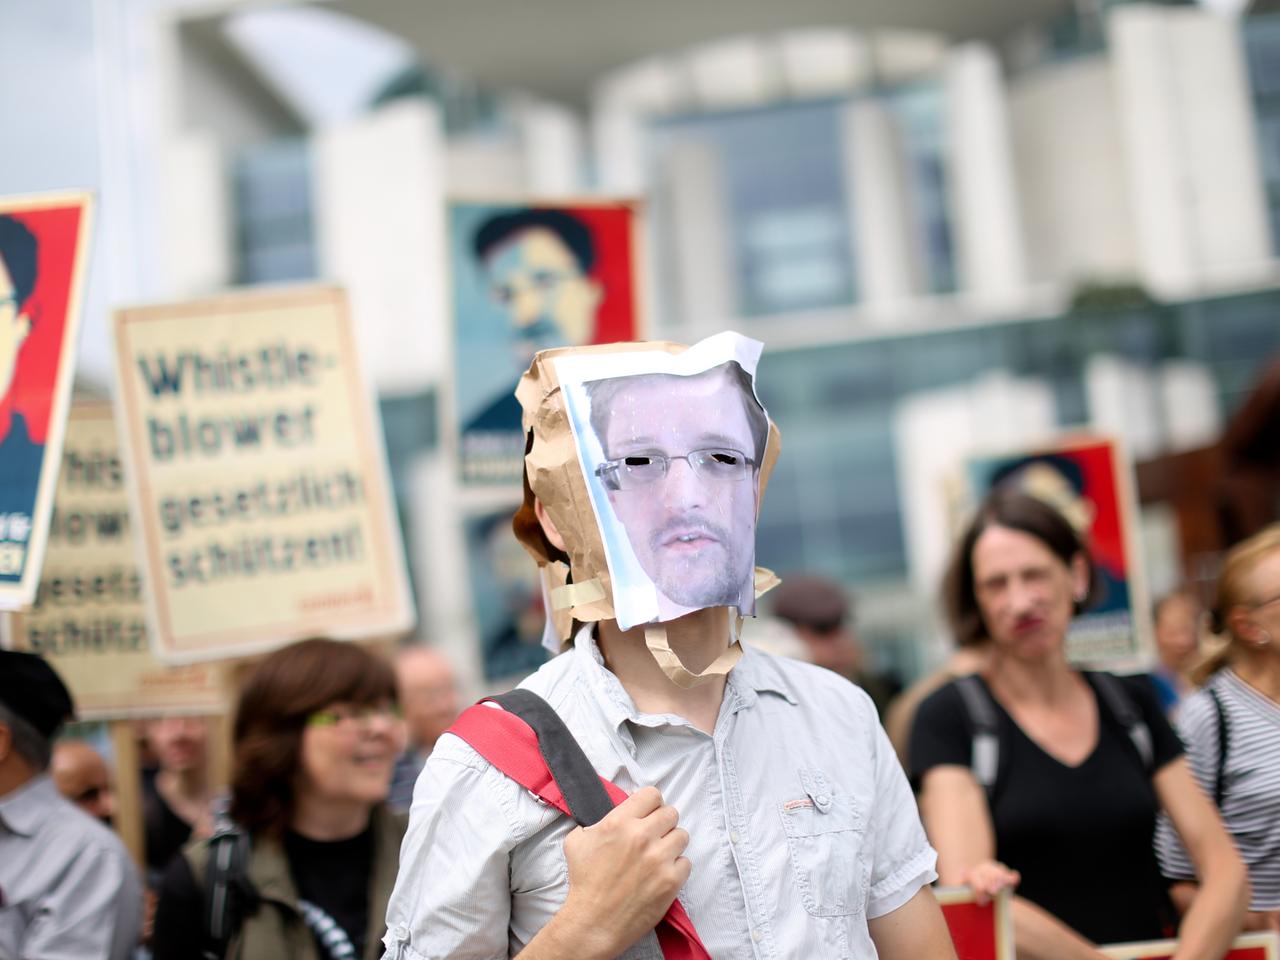 Juli 2013: Demokratie-Aktivisten demonstrieren vor dem Bundeskanzleramt in Berlin fÃ¼r den Ex-US-Geheimdienstler Edward Snowden.